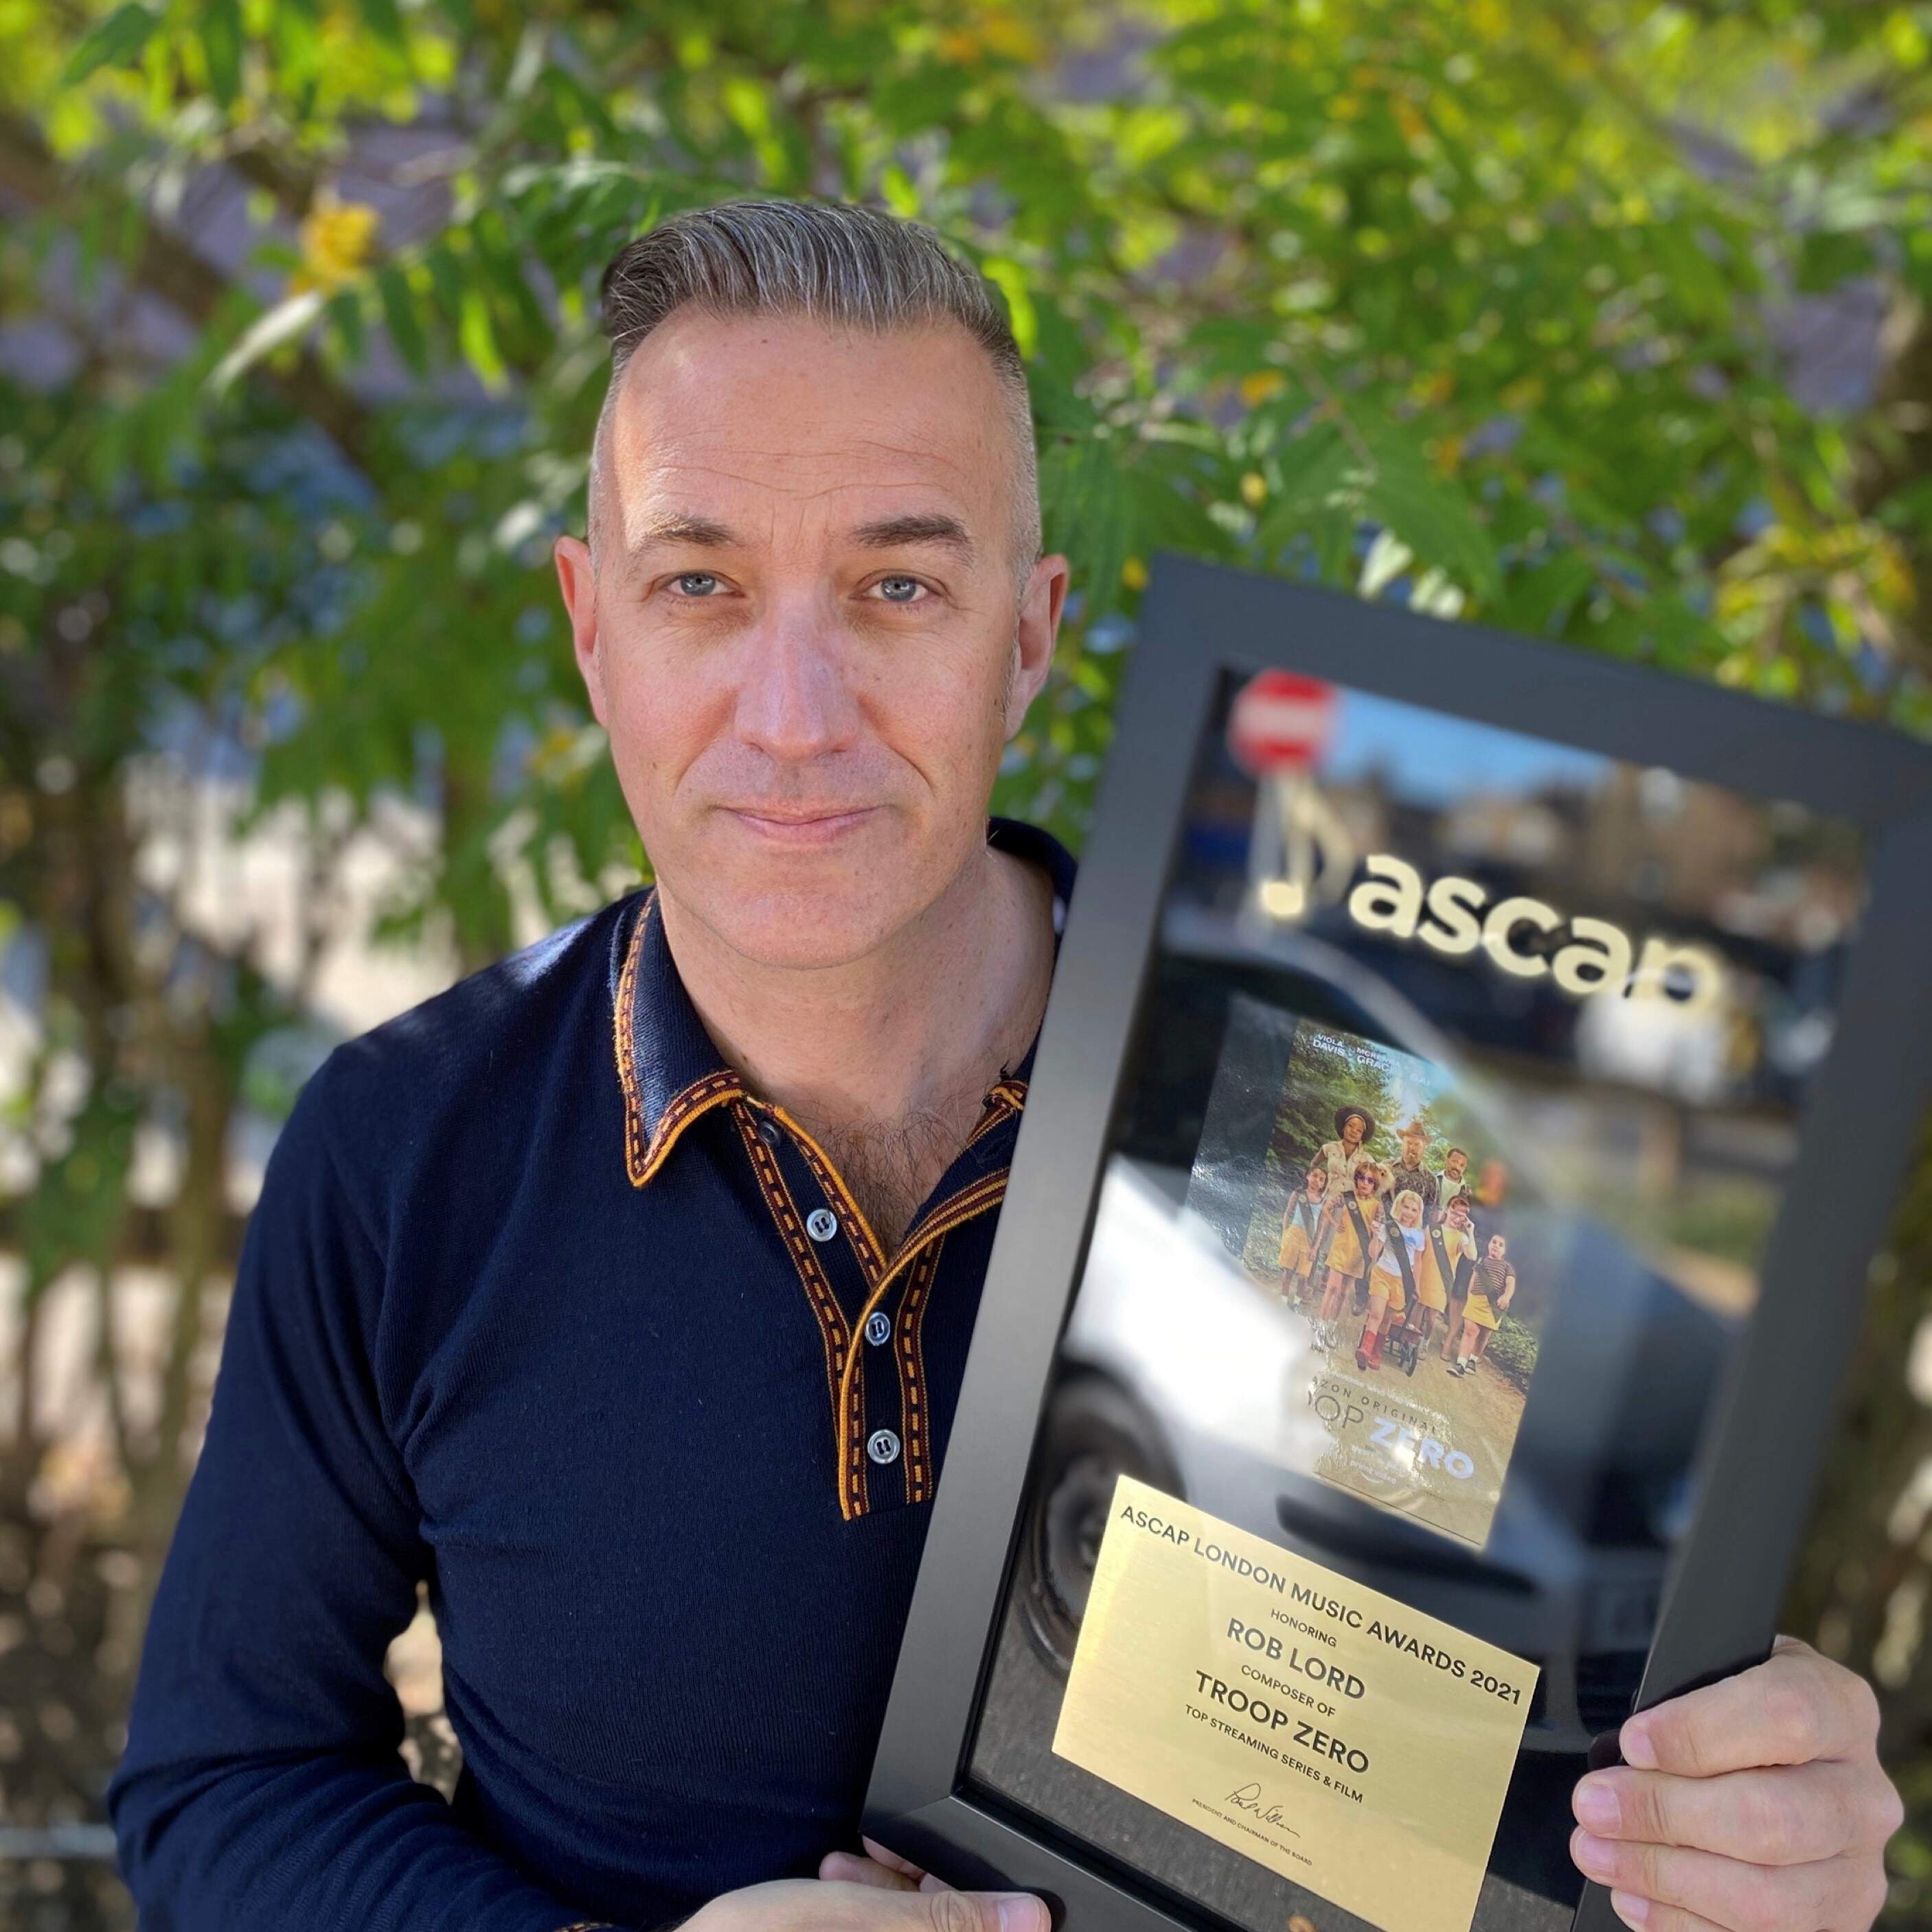 2nd ASCAP Award Win For Troop Zero Score